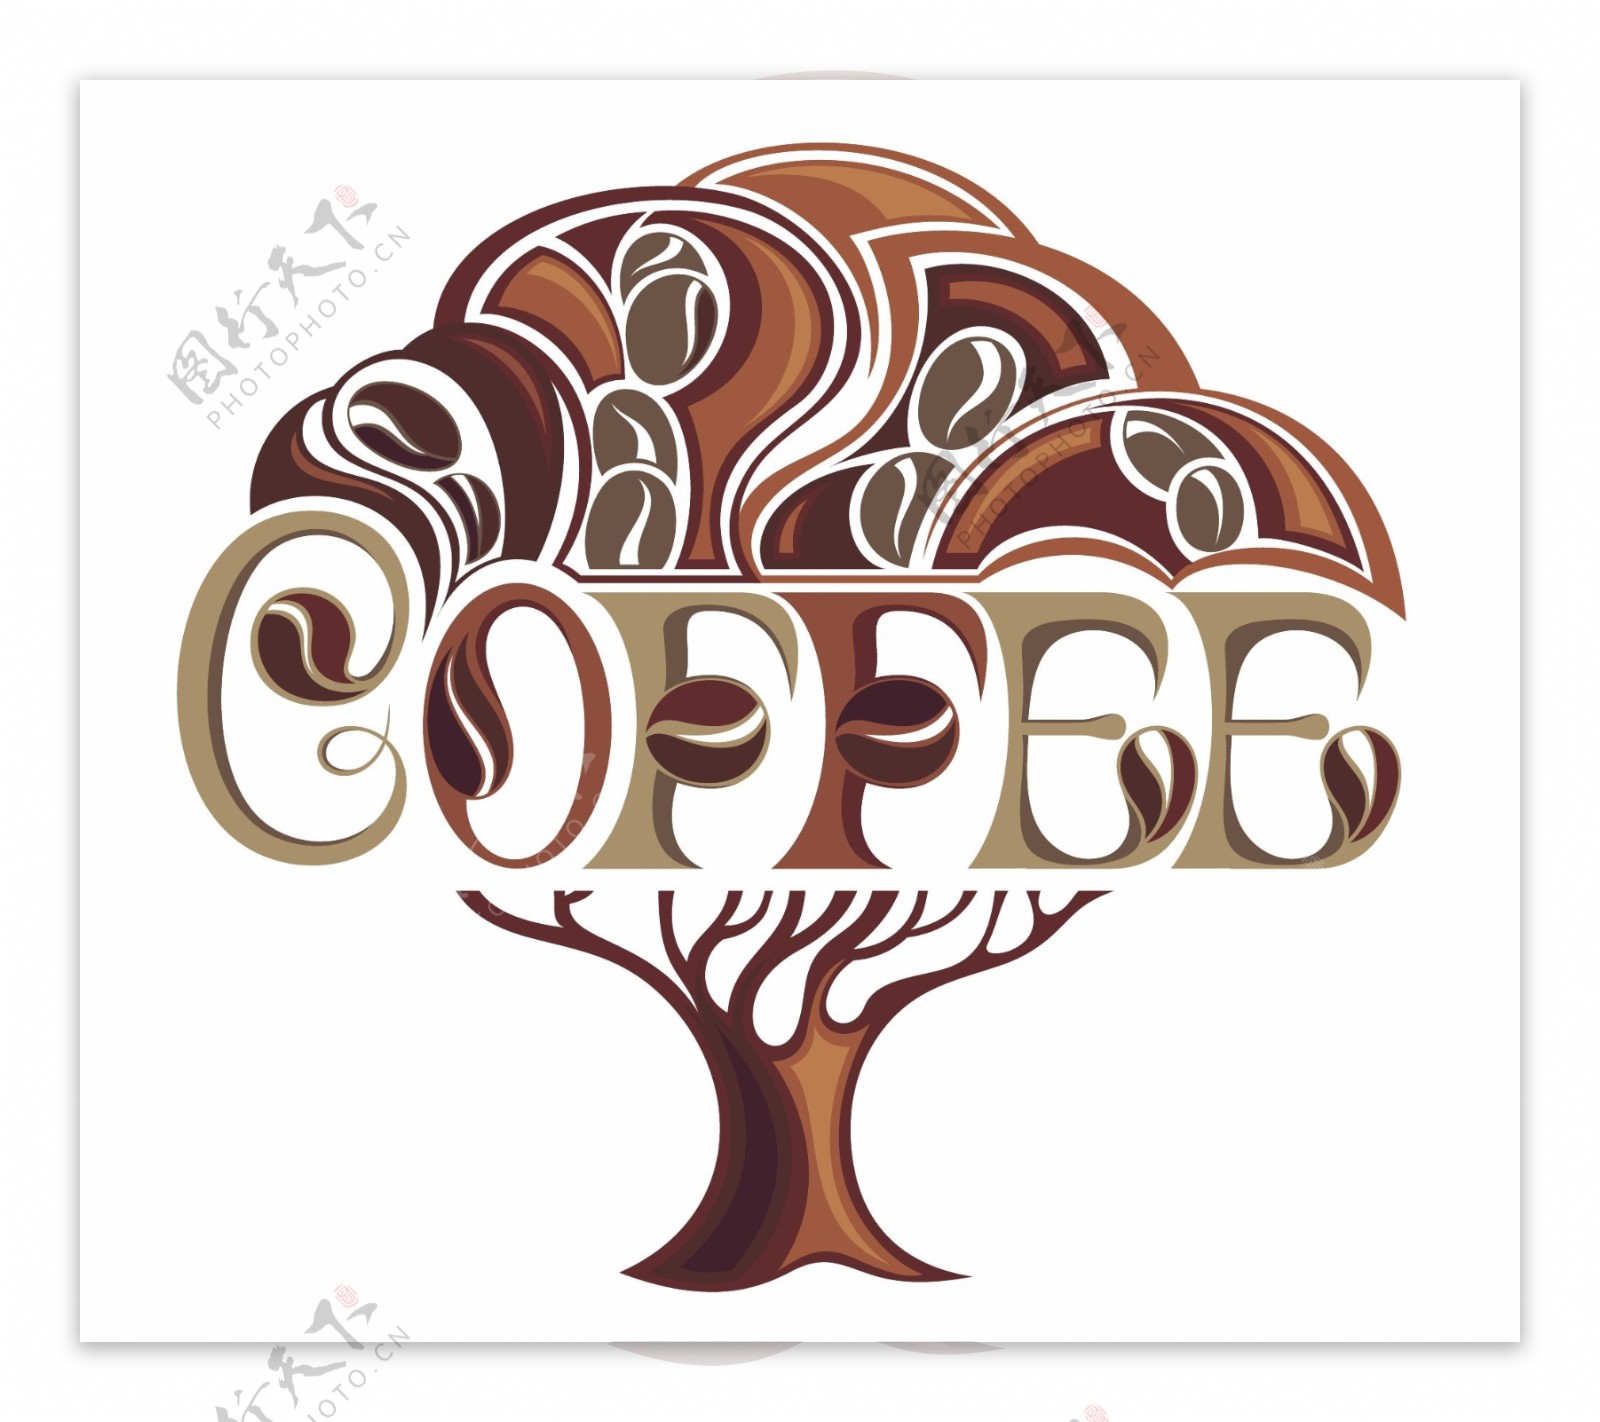 咖啡树